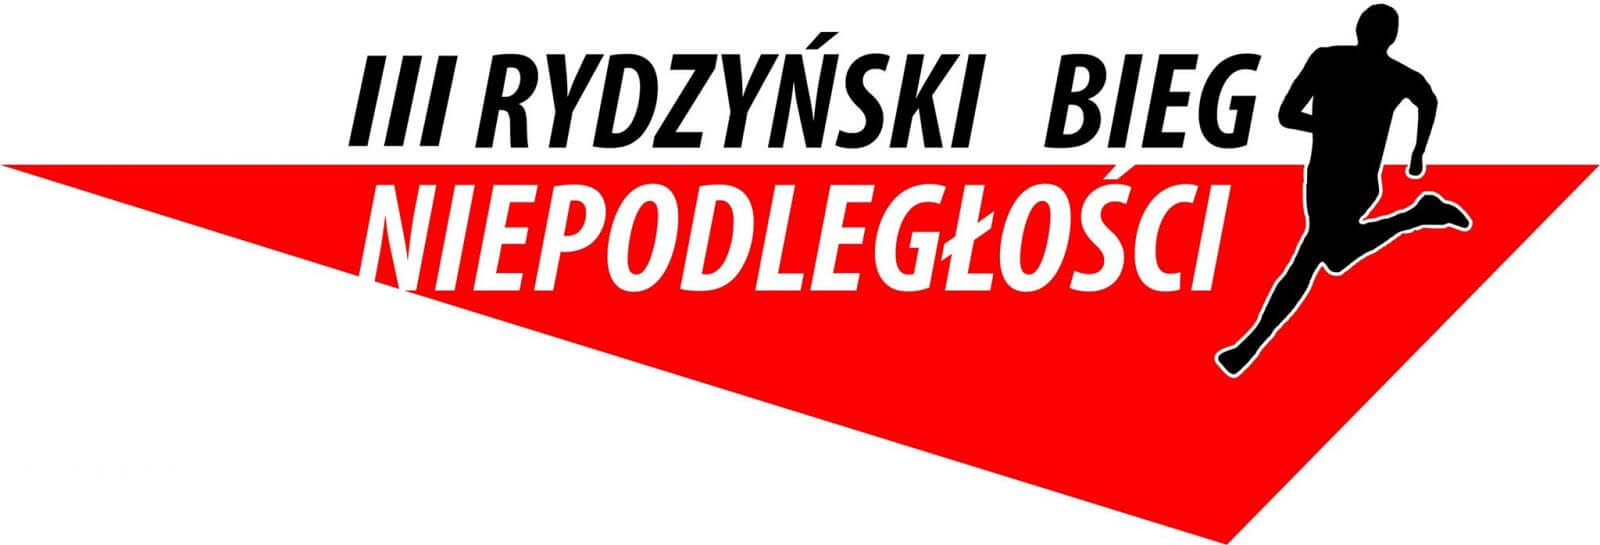 III Rydzyński Bieg Niepodległości – fotorelacja